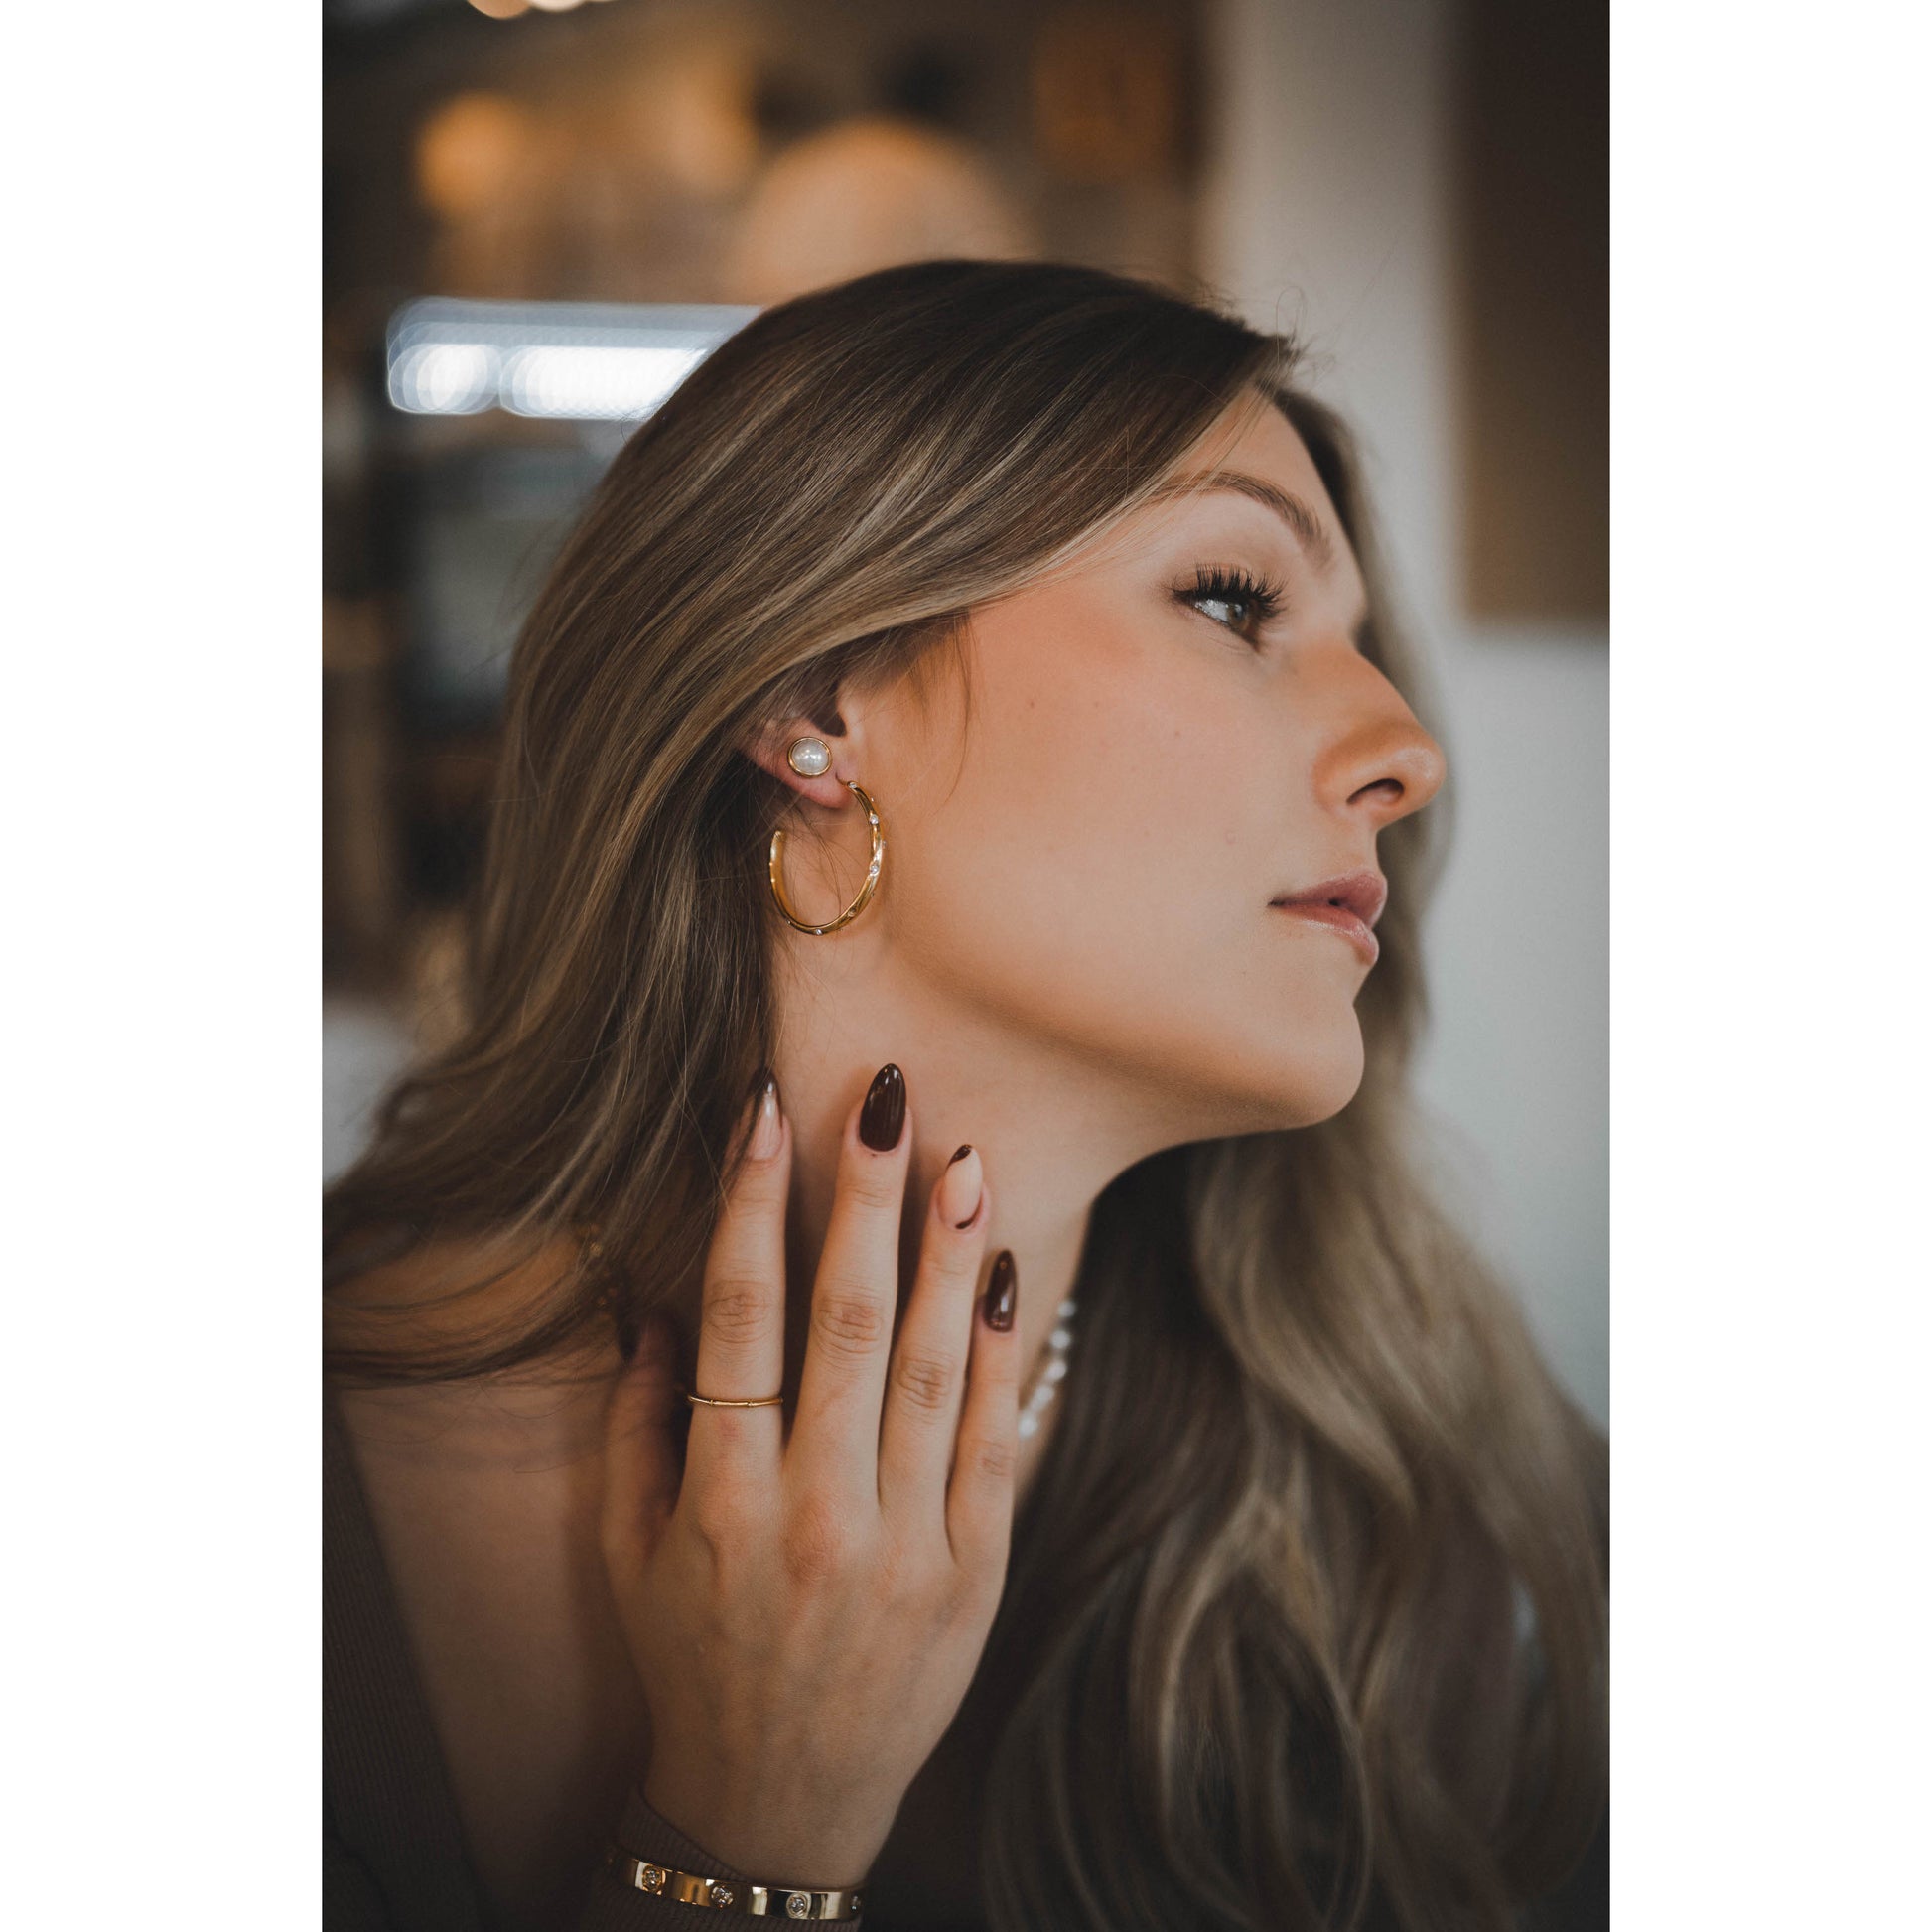 Su Perlen Ohrringe Yasemen Store Schmuck Accessoires Edelstahl Stainless Steel 18K Vergoldet Gold jewel jewelry earrings